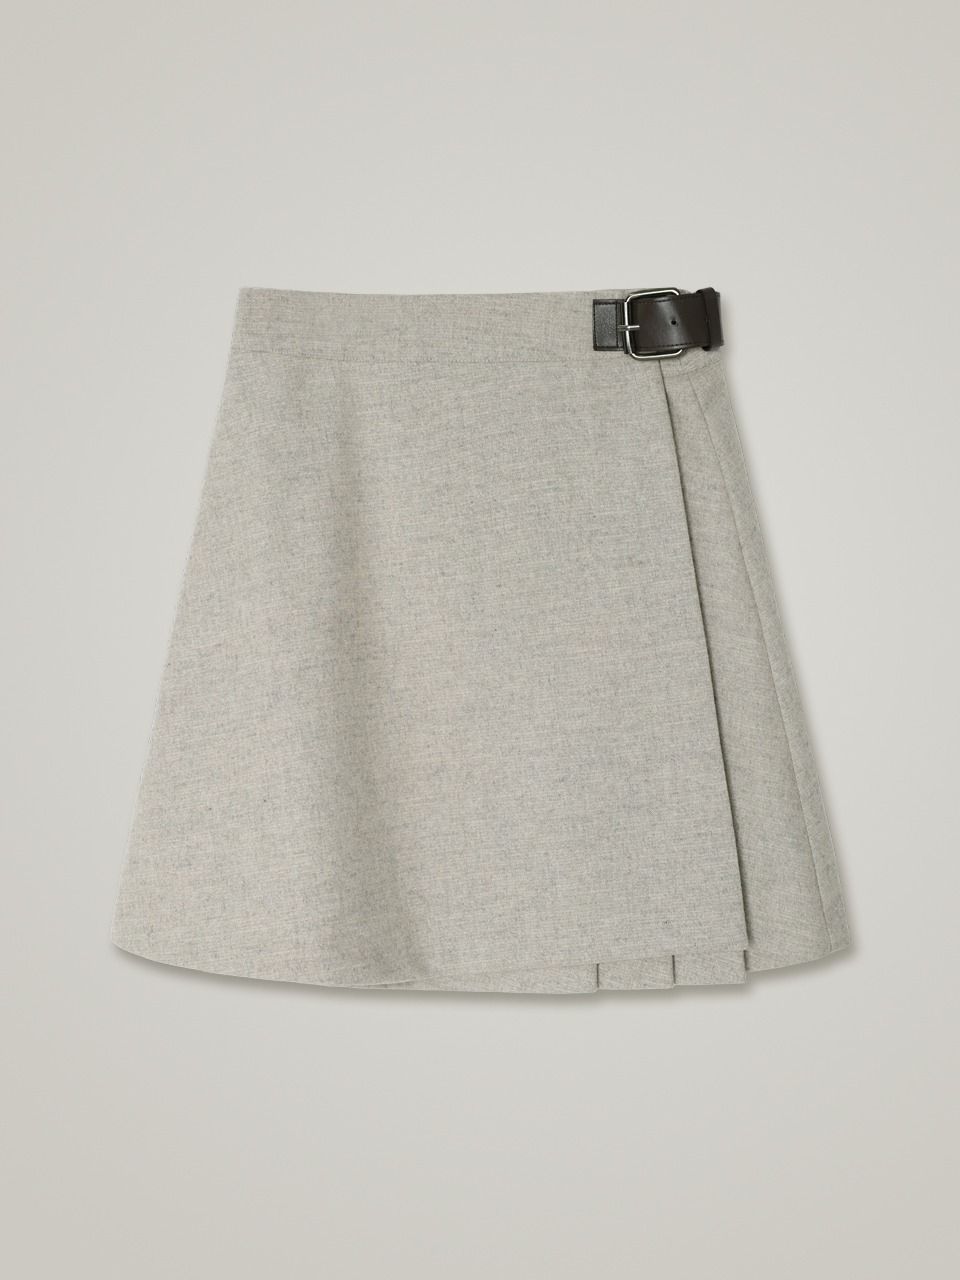 comos 904 wrap pleats buckle skirt (melange beige)